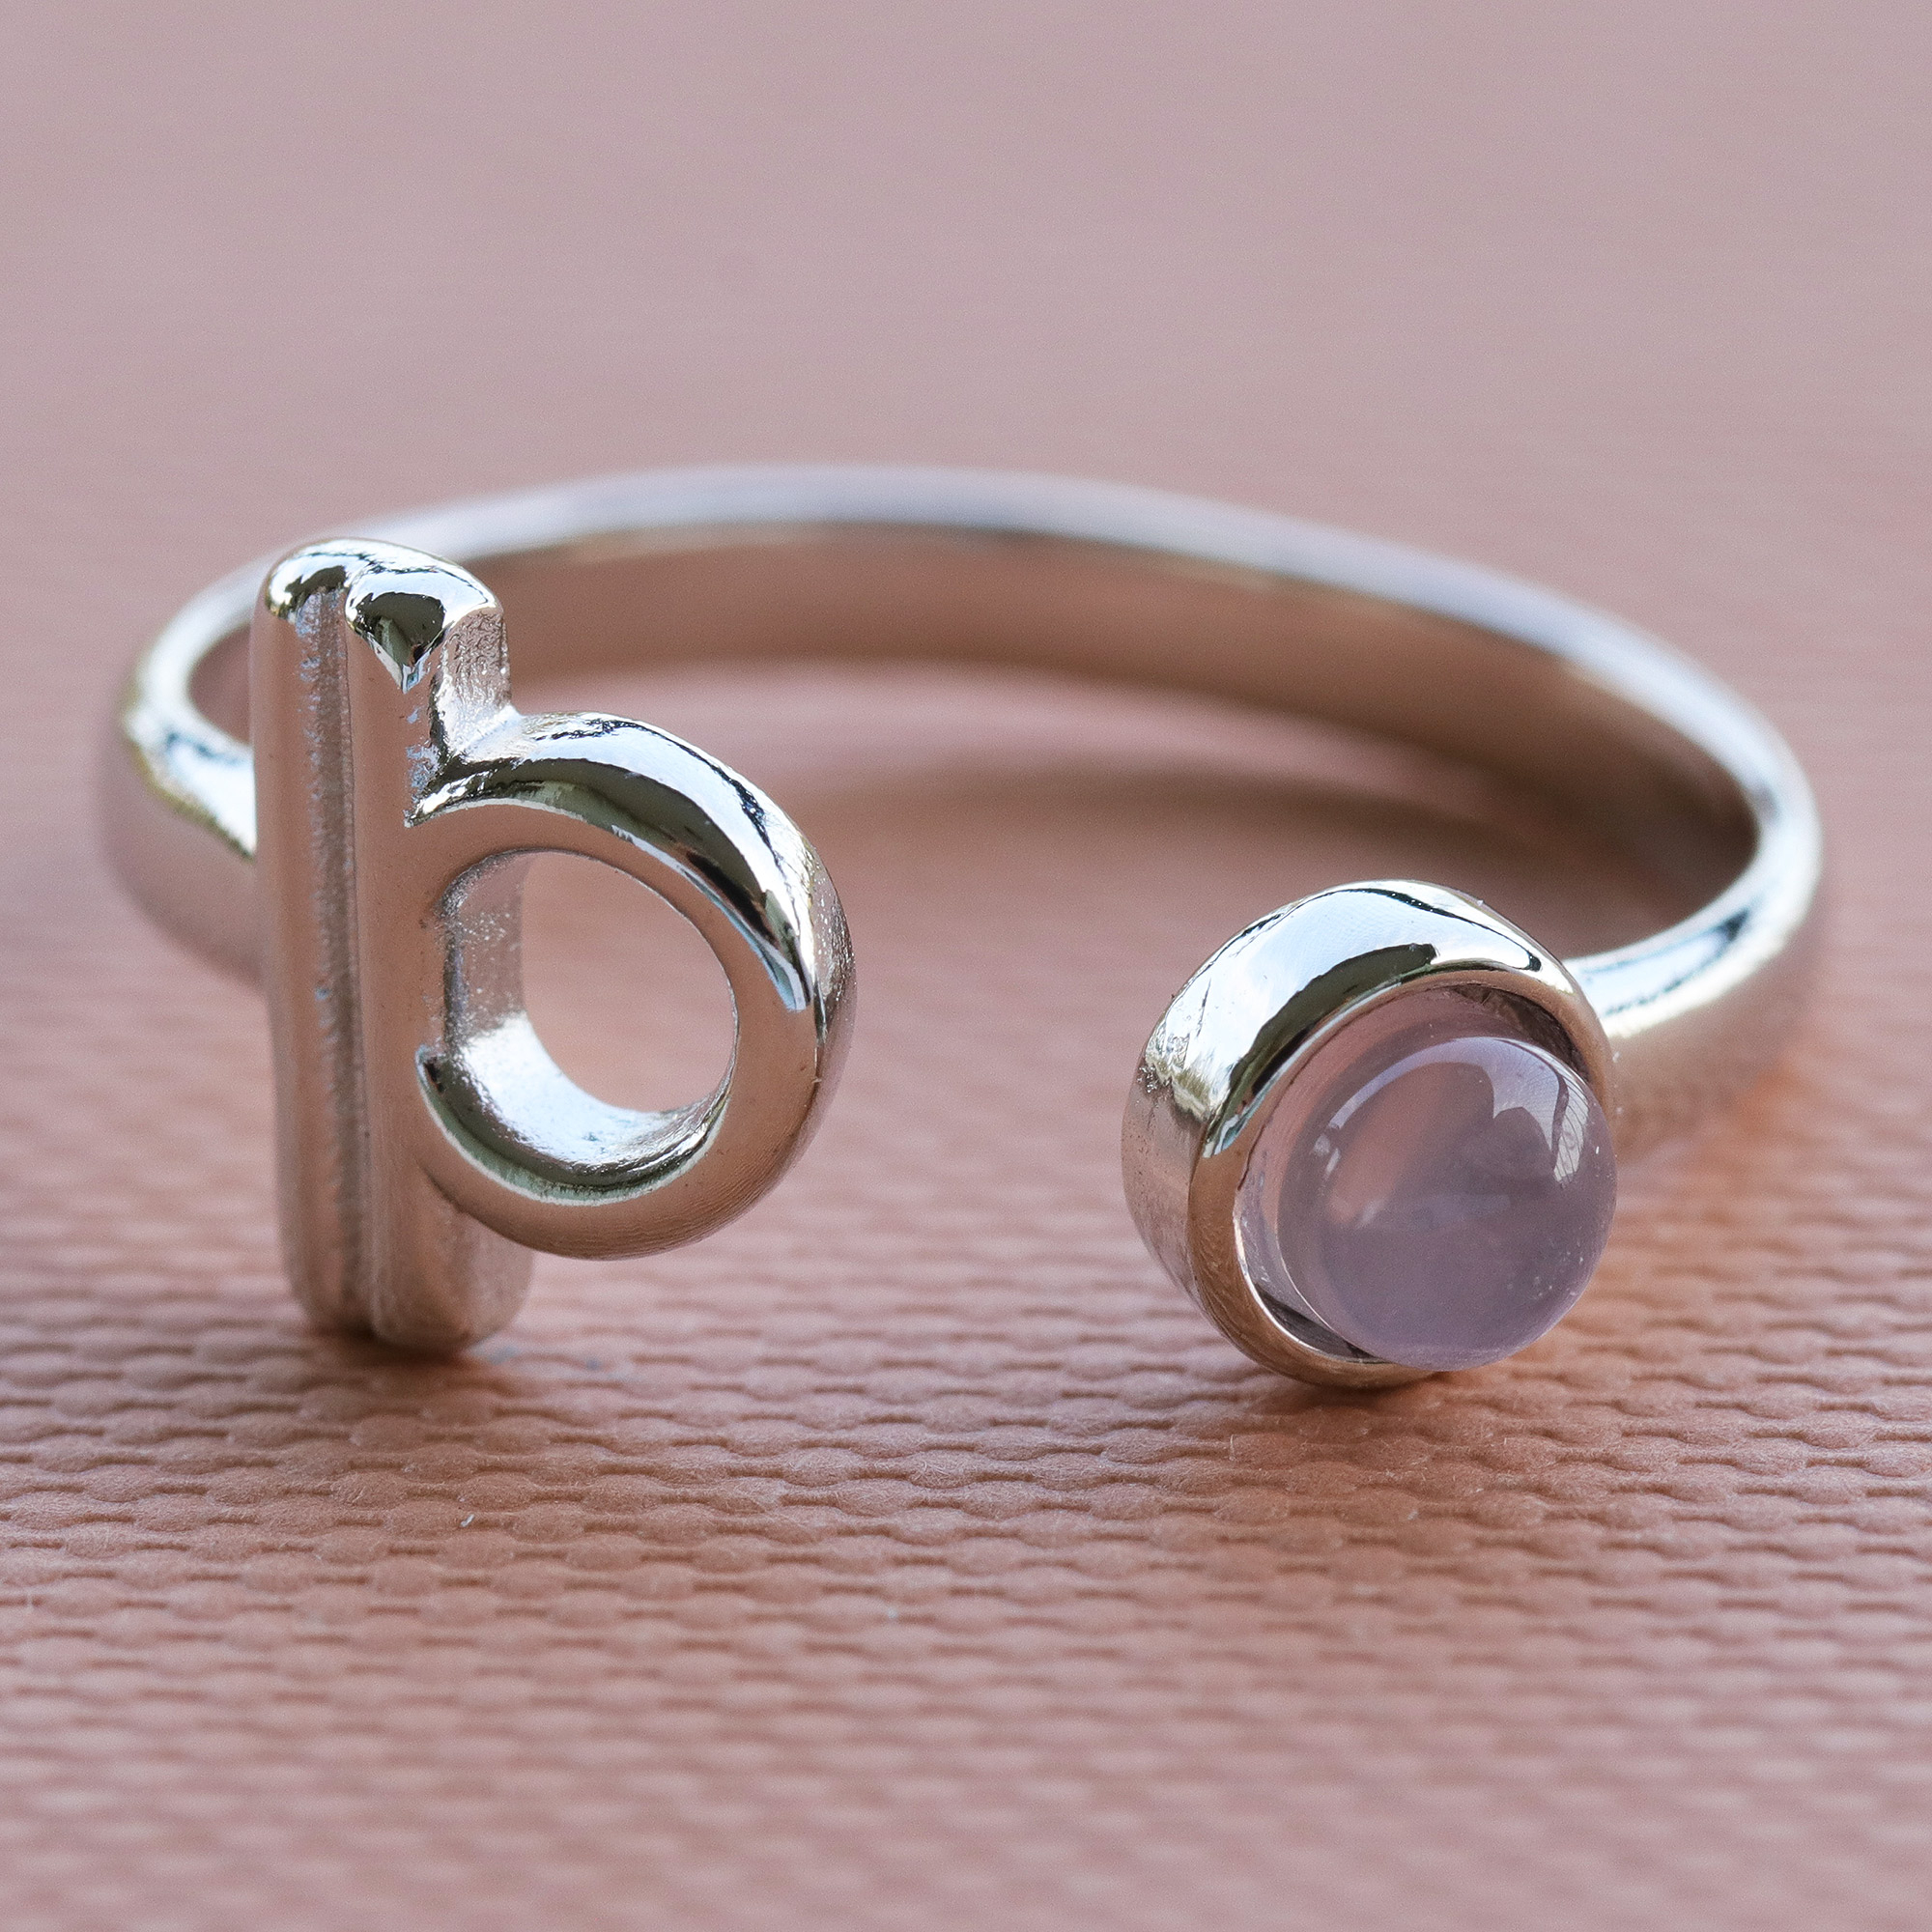 copper rose quartz ring